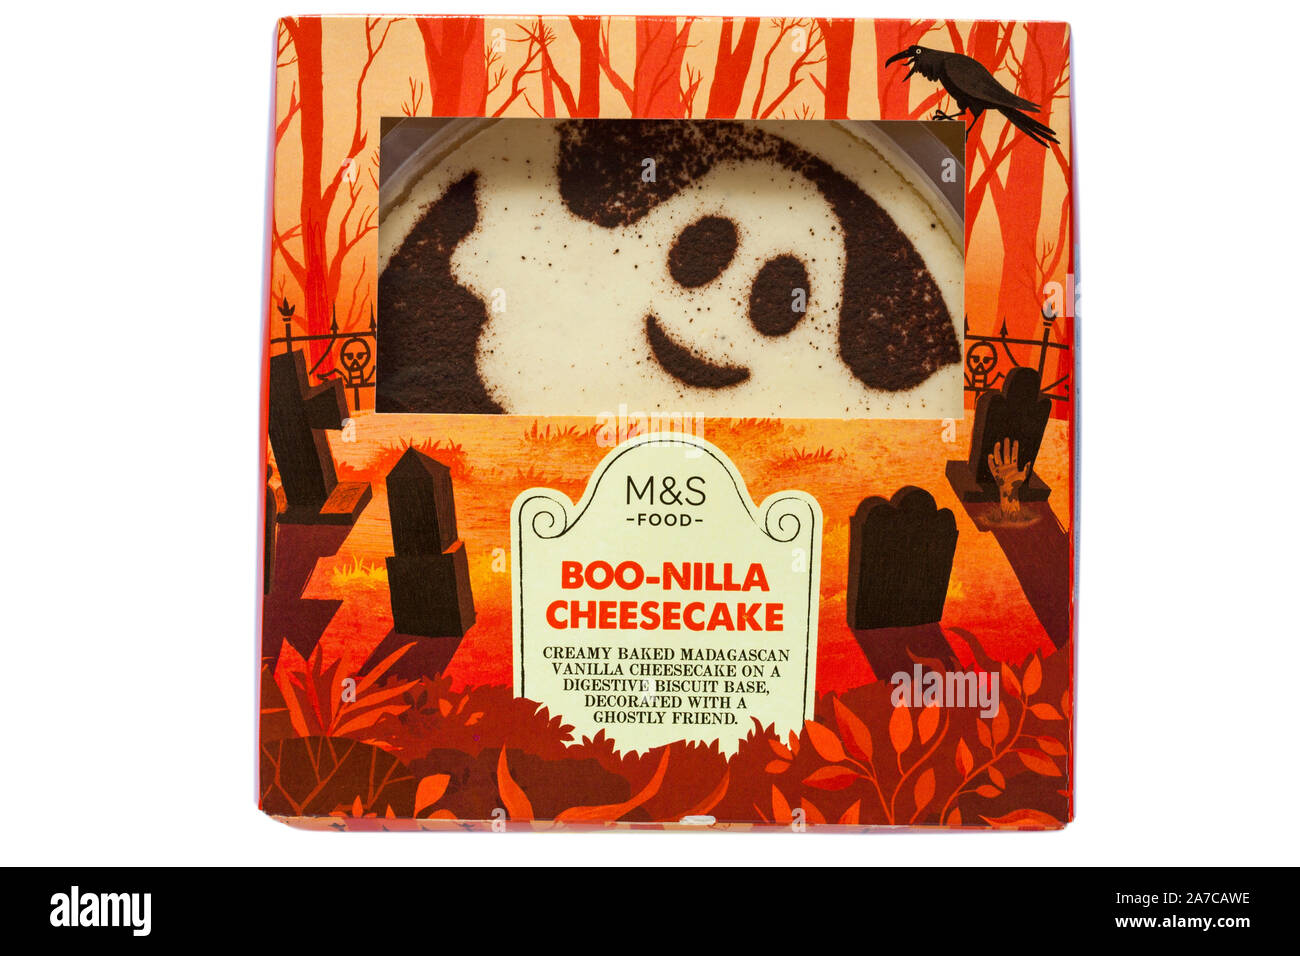 Boo-nilla cheesecake à partir de M&S isolé sur fond blanc - idéal pour l'Halloween, ghost Banque D'Images